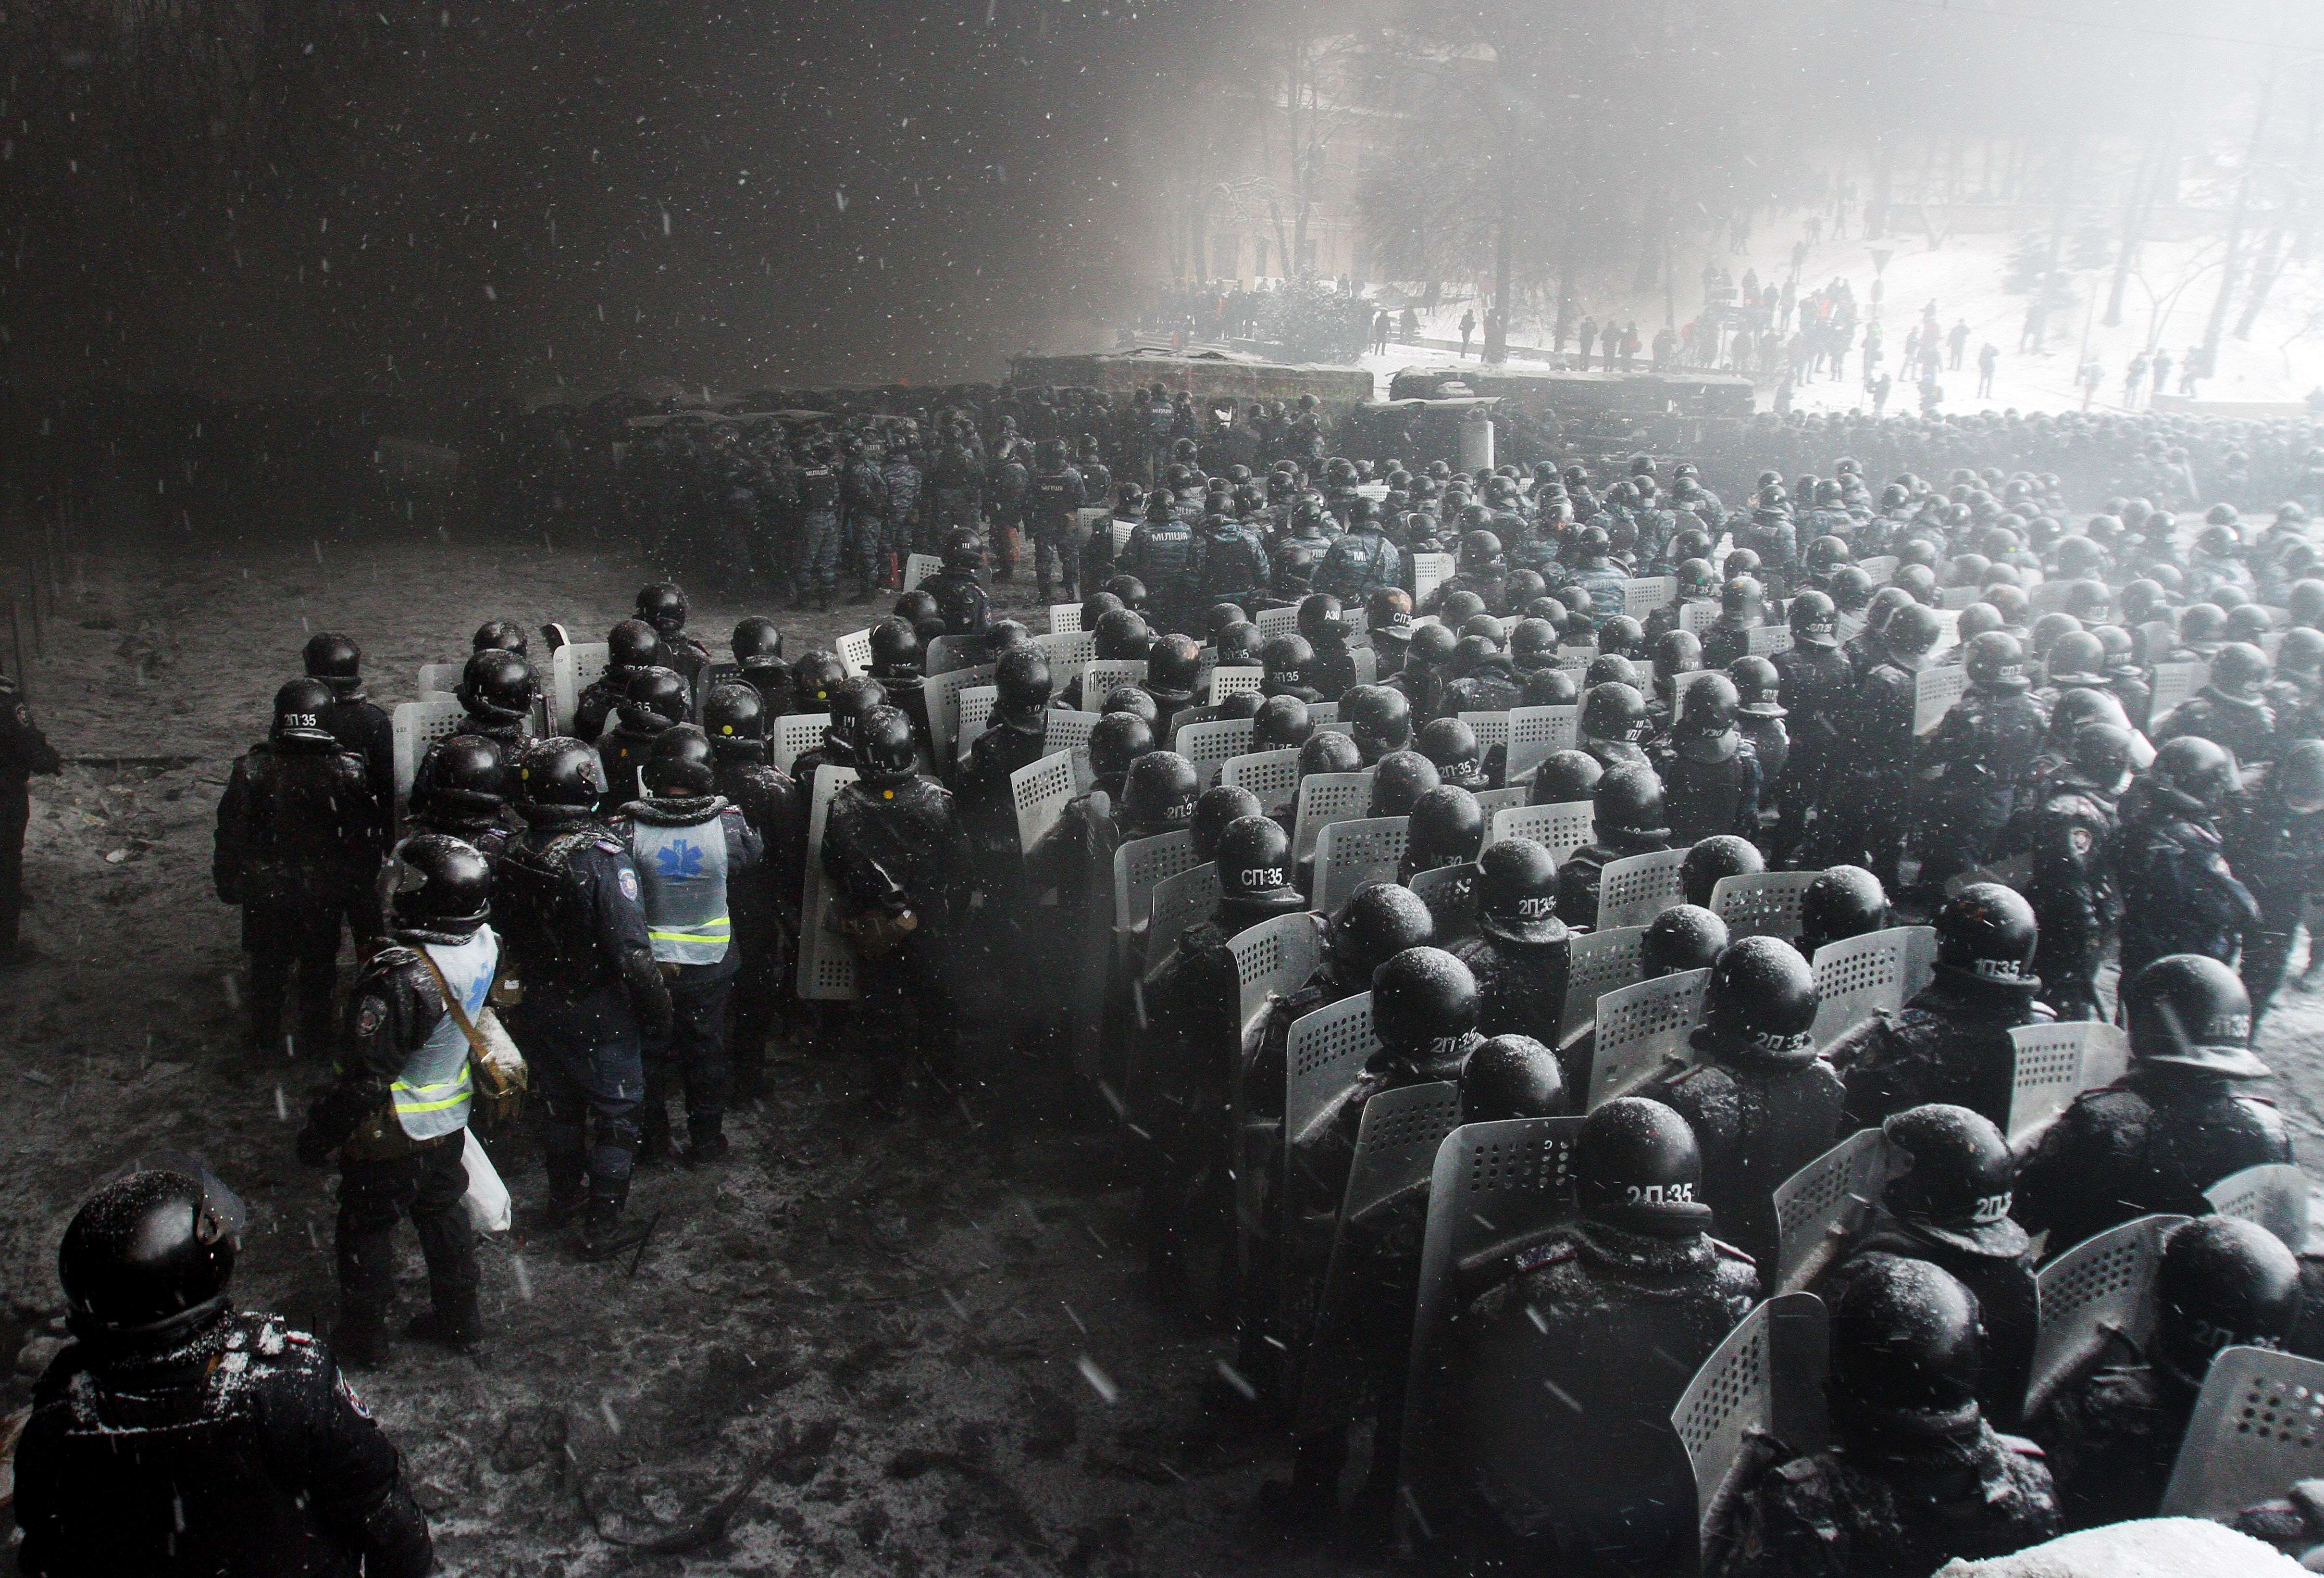 Euromaidan, revolutia care si-a luat numele de la un hashtag de pe internet. Momentele cheie ale celor 3 luni de revolte - Imaginea 8